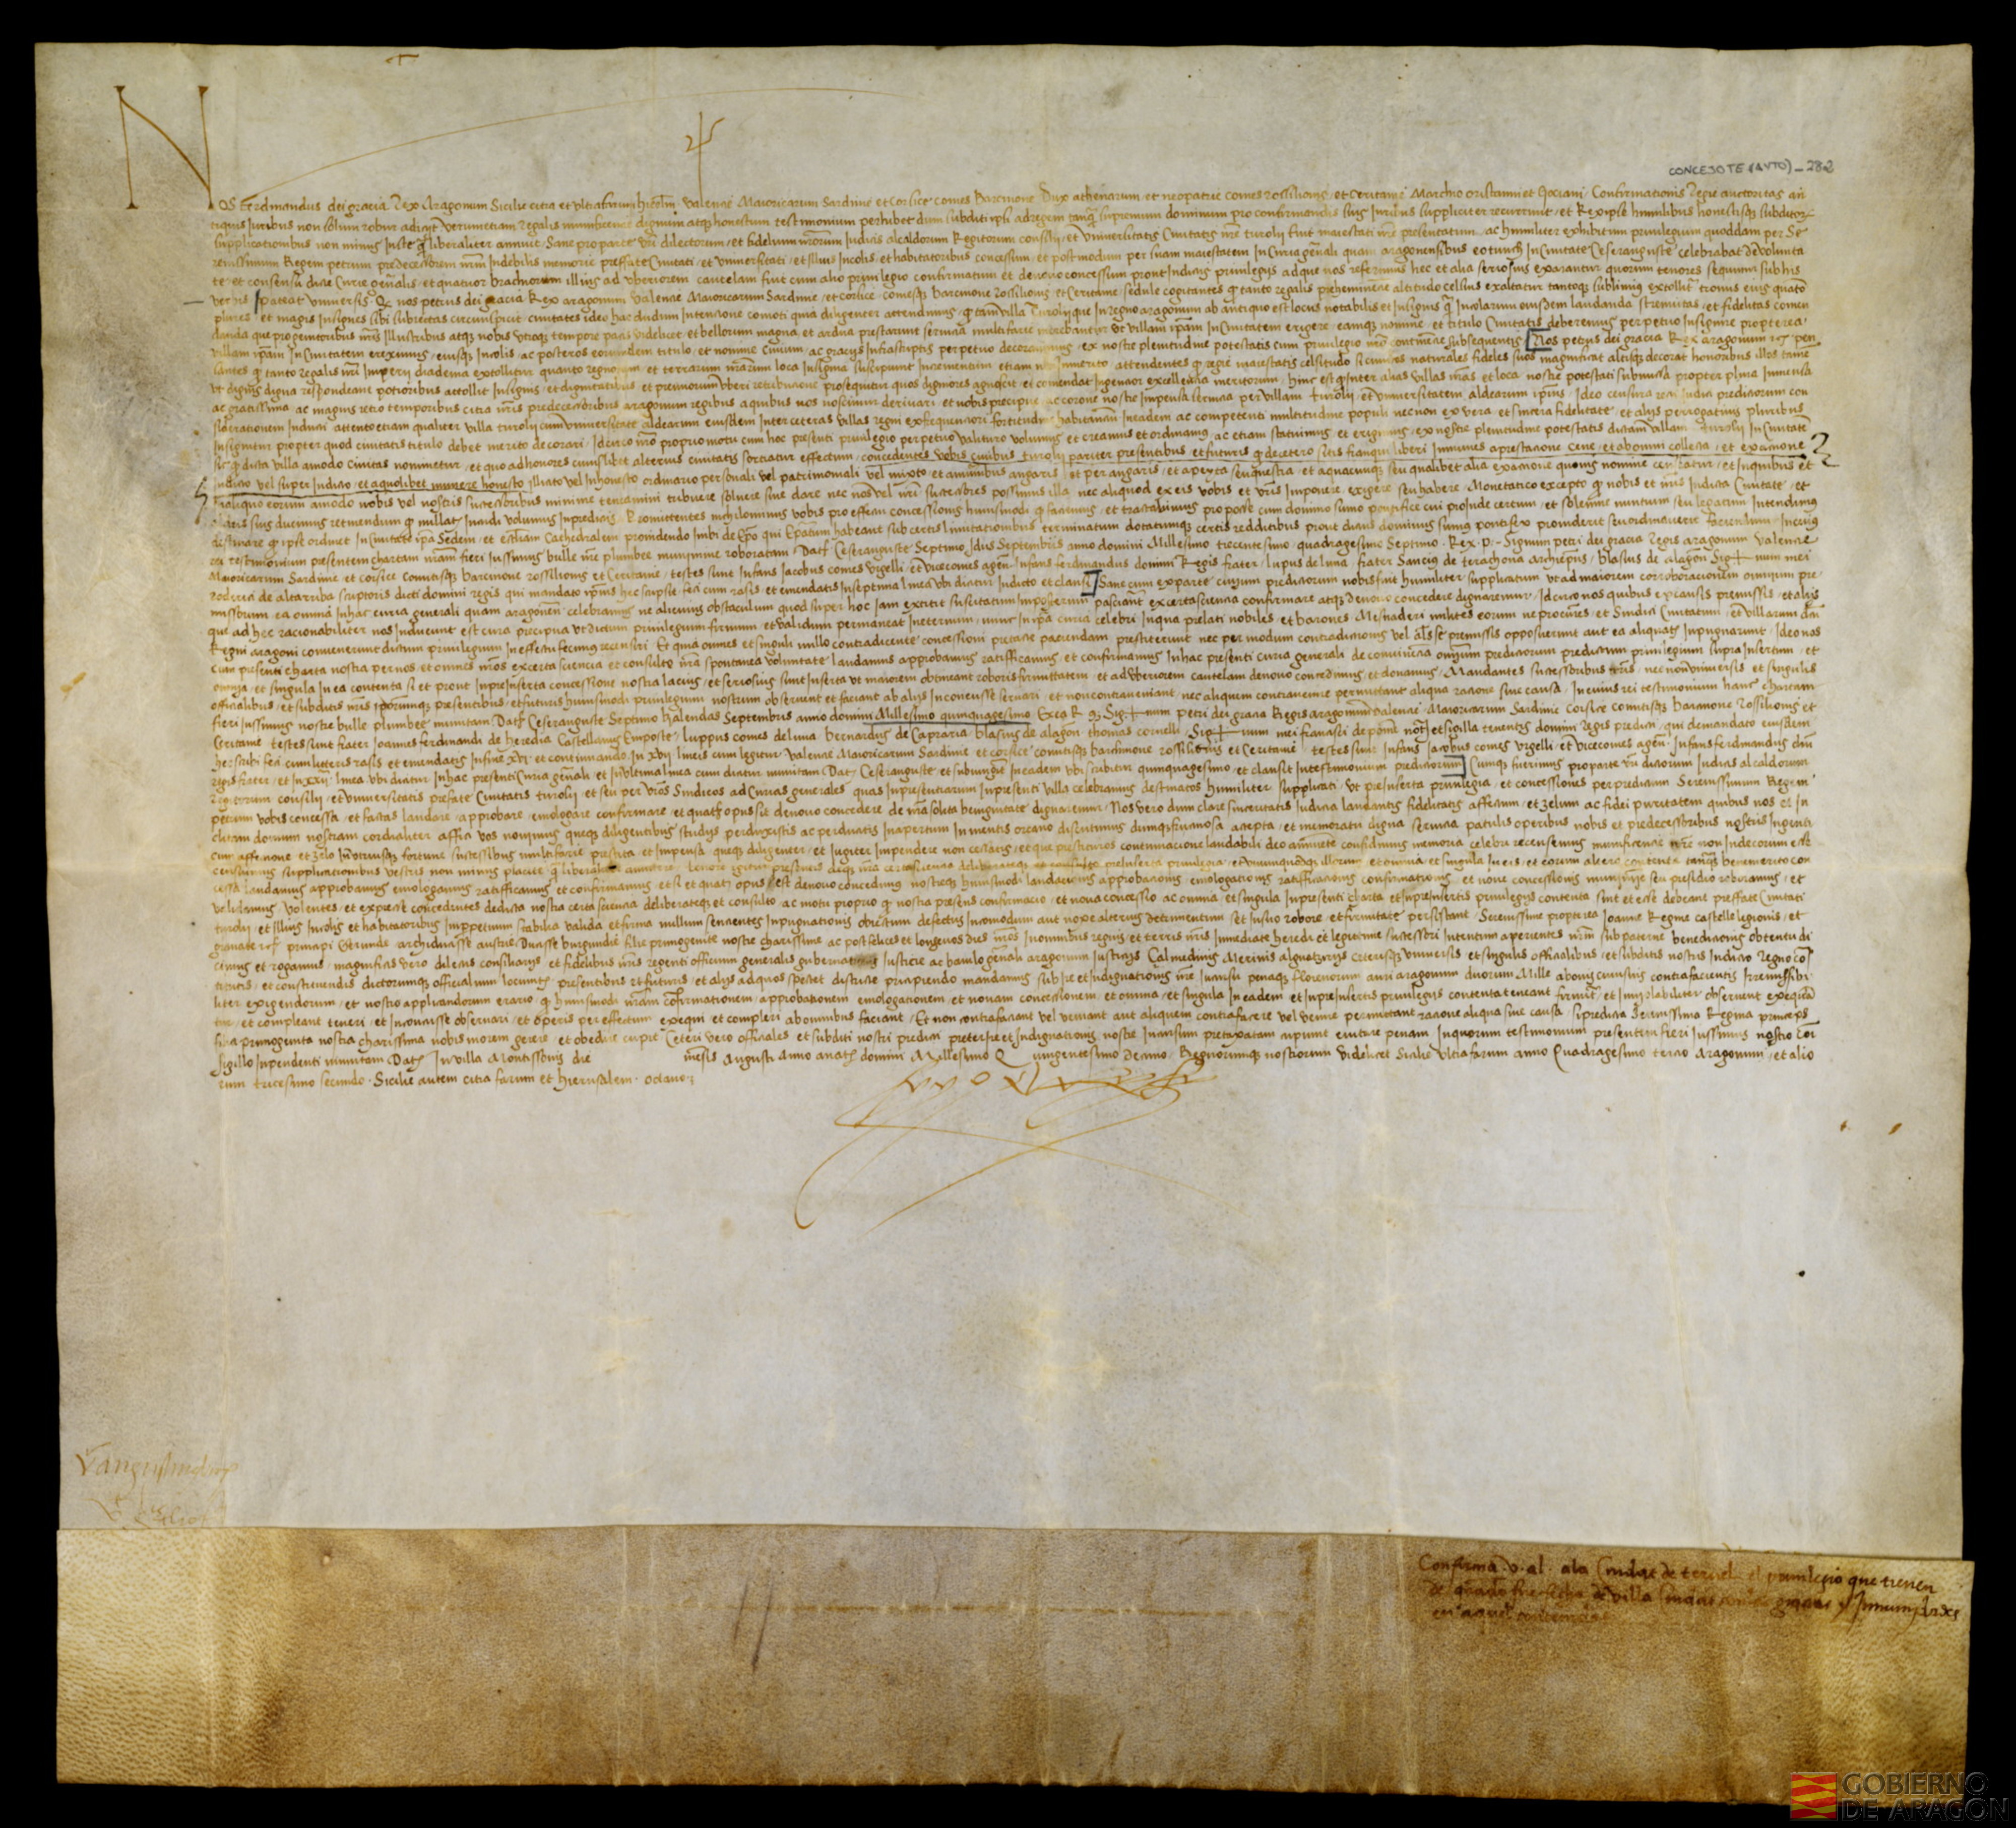 Privilegio del rey don Fernando por el que confirma el dado por Pedro IV, concediendo a Teruel el titulo de ciudad